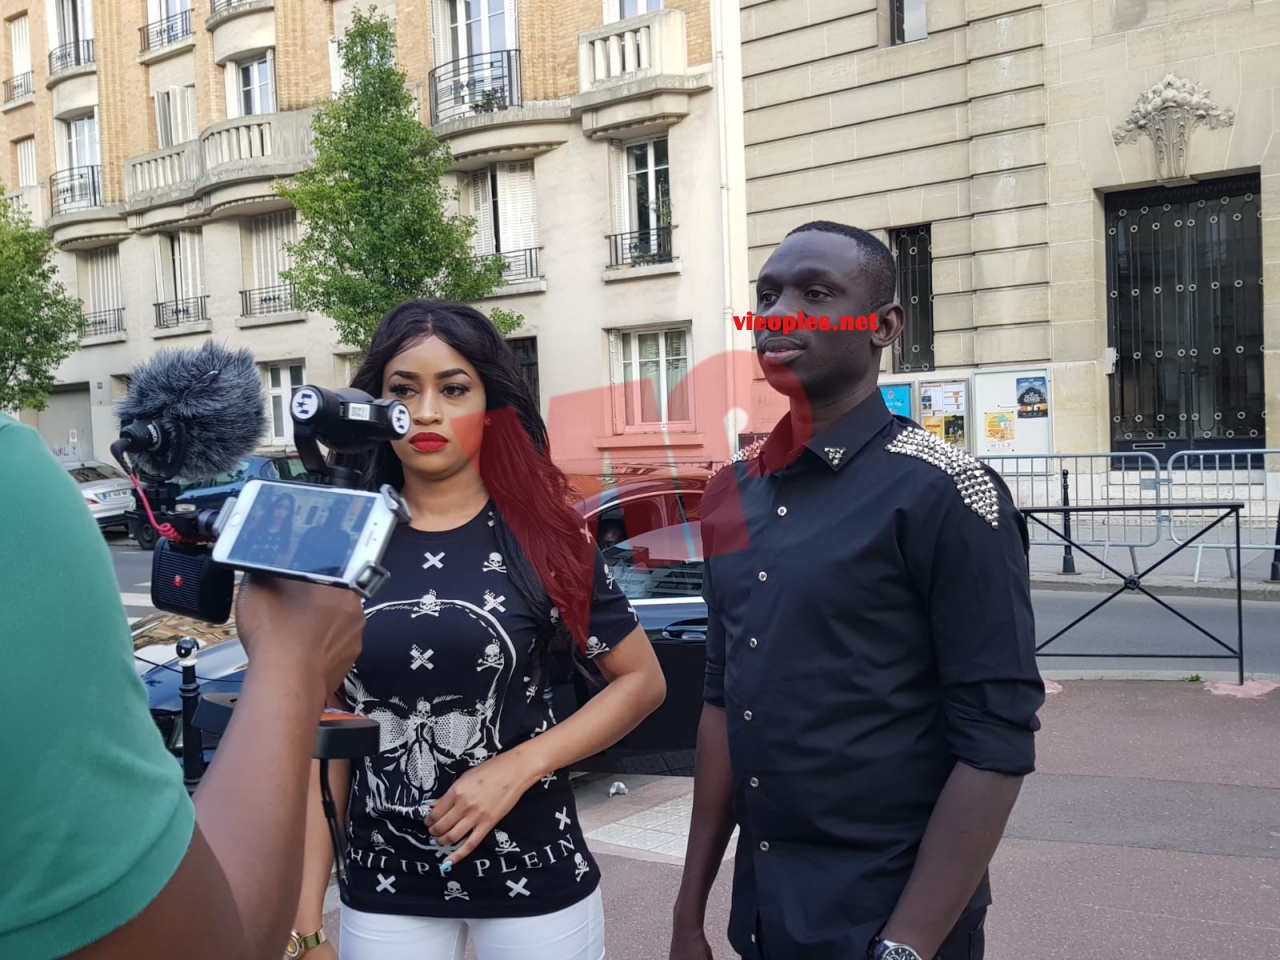 Pape Diouf en mode tournage avec Senepeople à Paris à découvrir bientot.